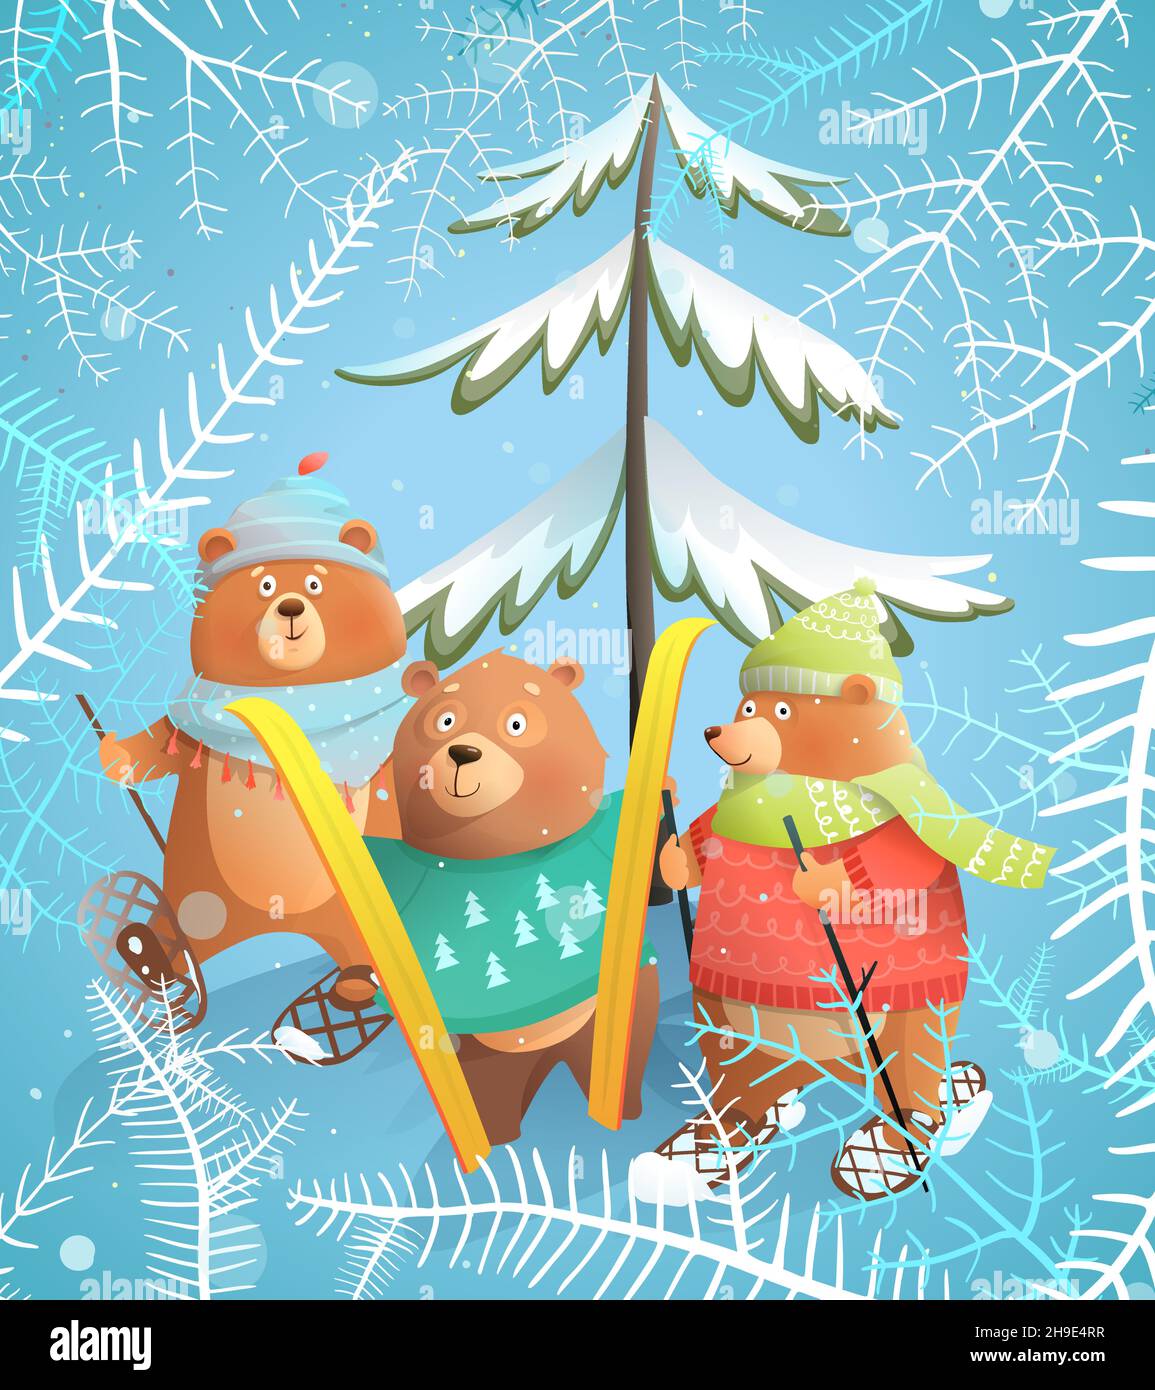 Bären Skifahren im Winter Weihnachtsurlaub Postkarte Stock Vektor